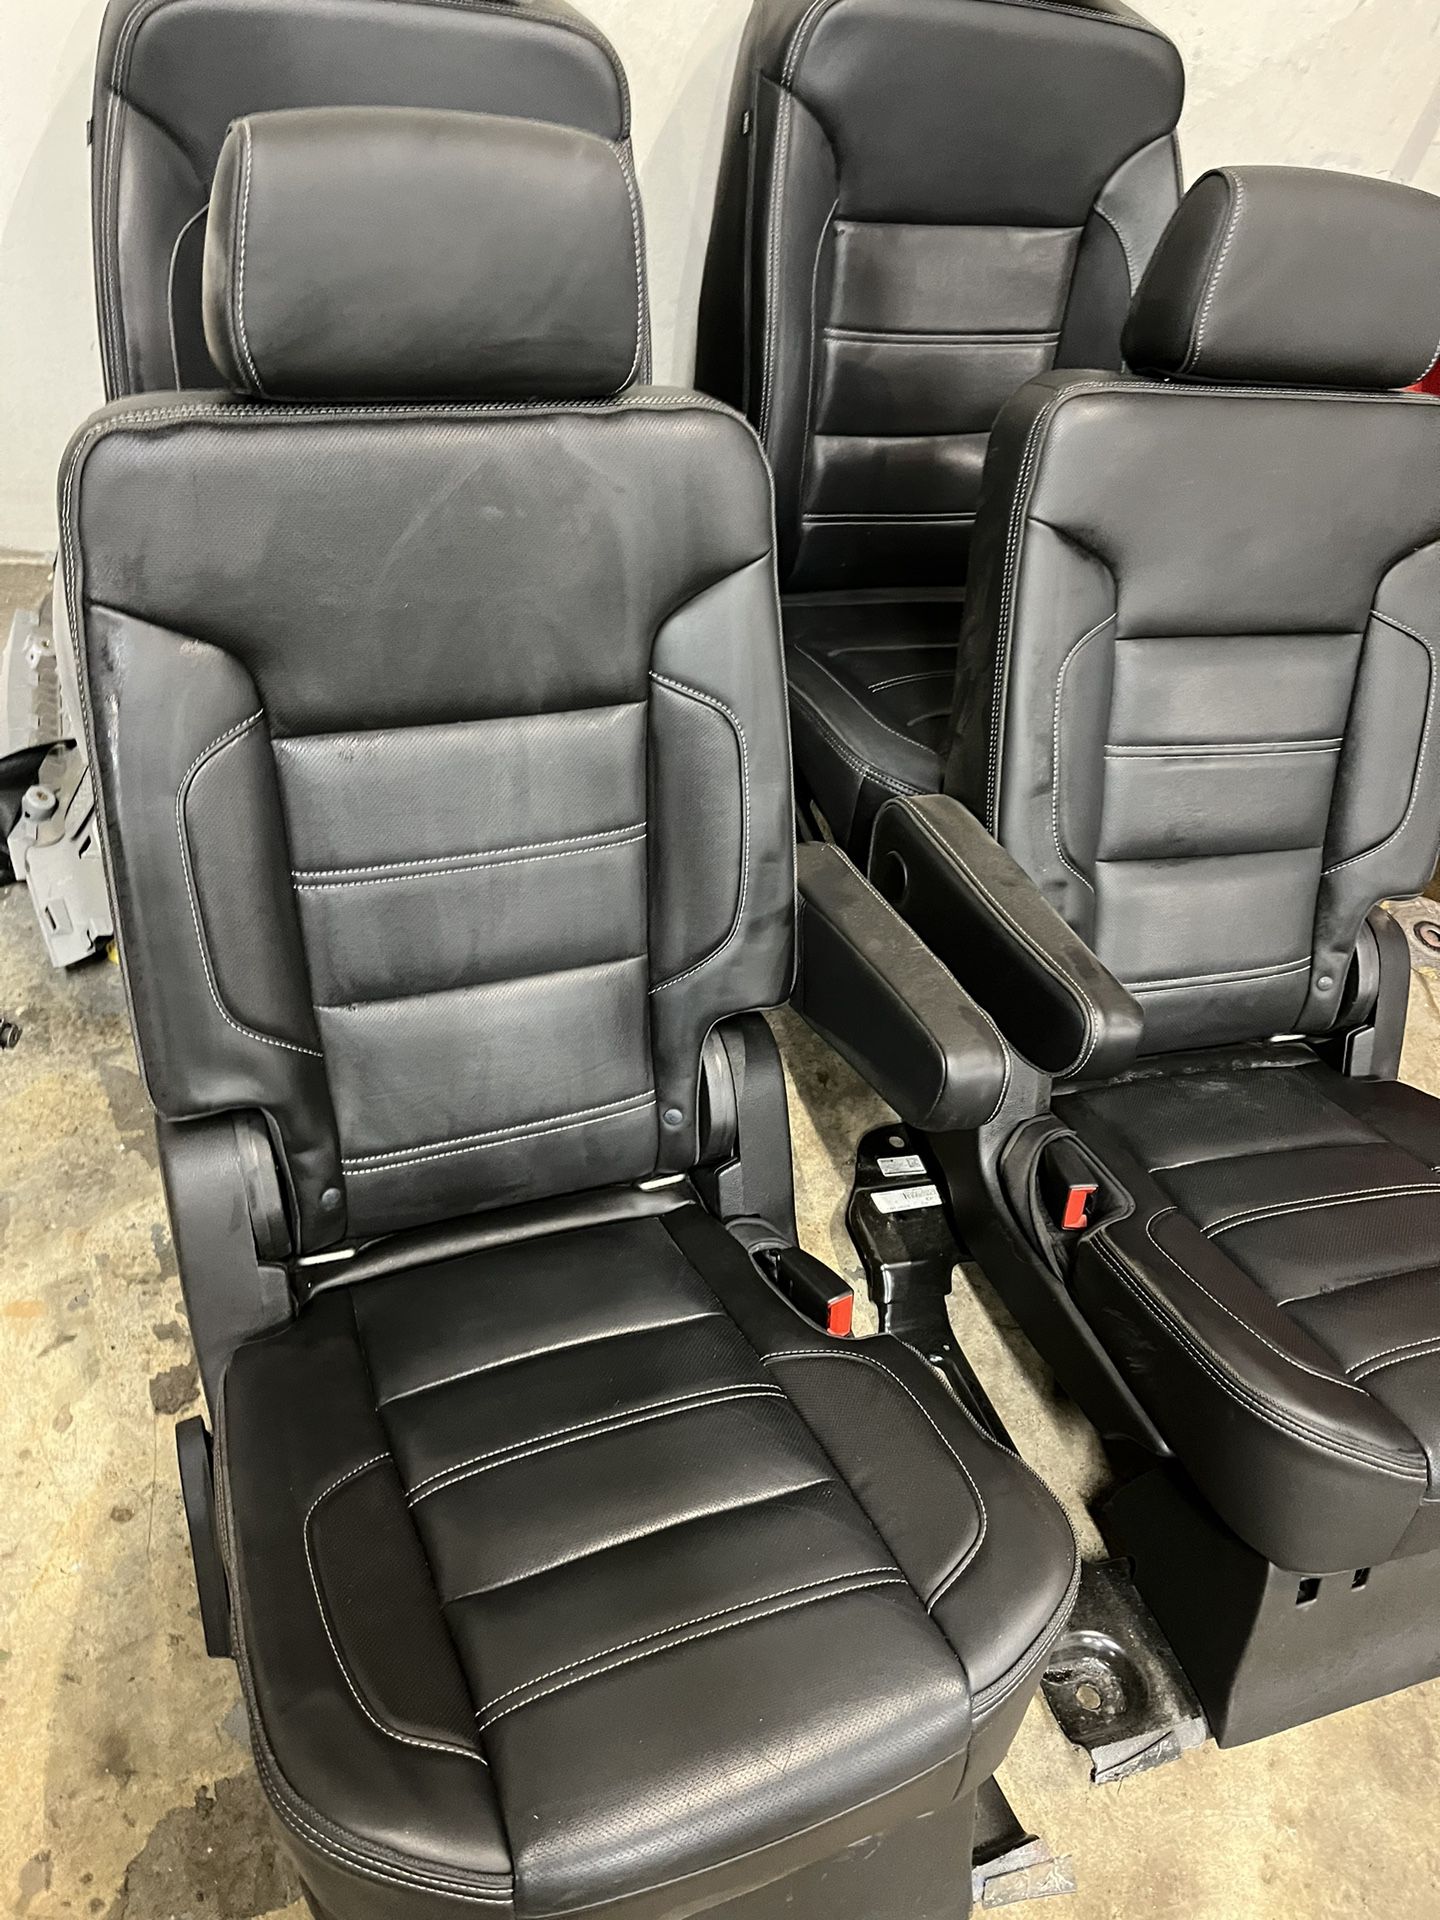 2017 Gmc Yukon Dinali, leather seats Part 